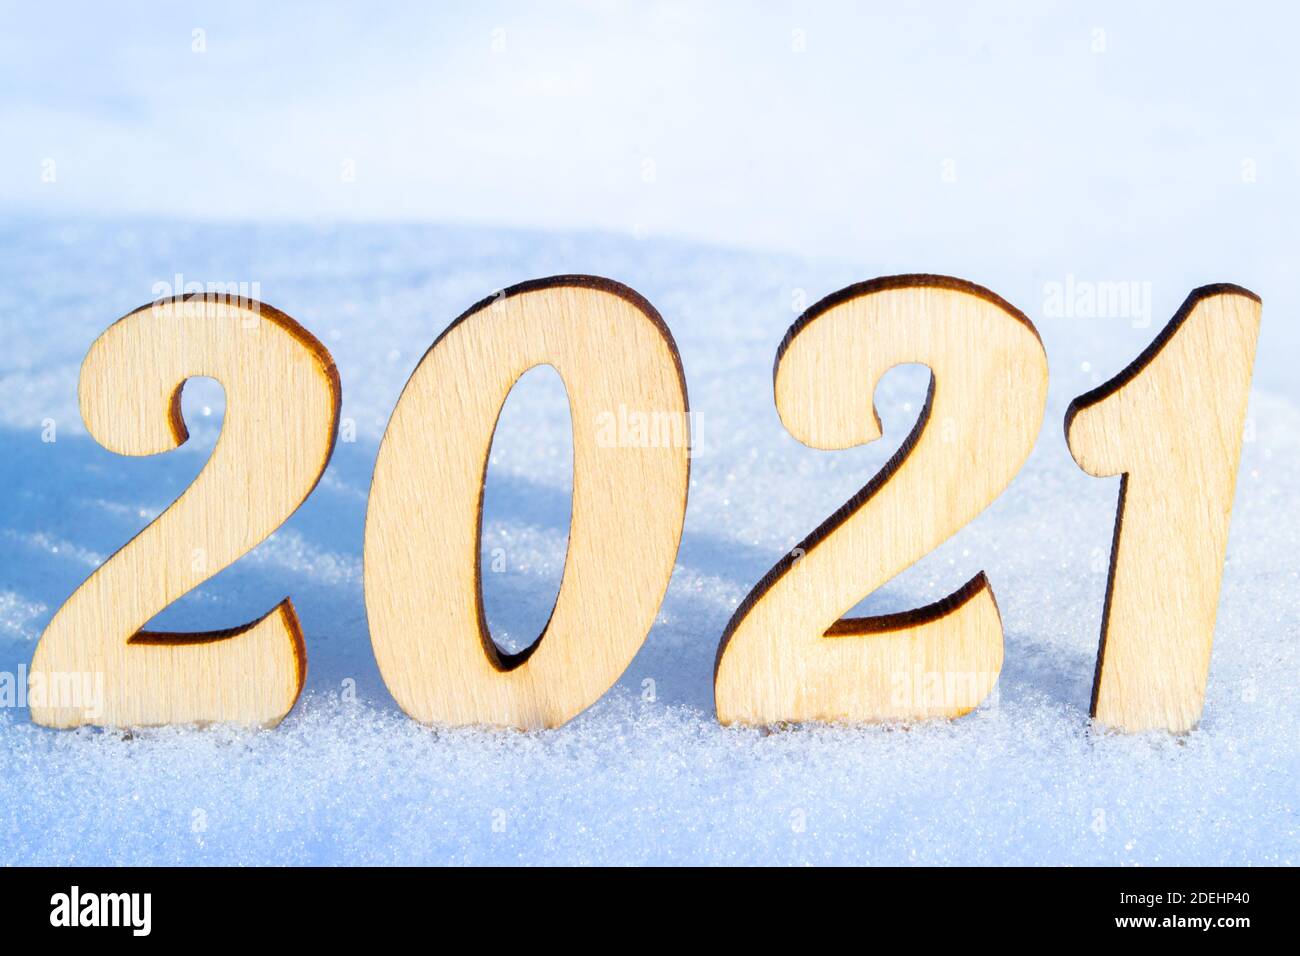 Célébration de la nouvelle année 2021. Les chiffres en bois 2021 sur une surface enneigée de la forêt de vignerons. Éclairé par le soleil éclatant. Style naturel. Banque D'Images